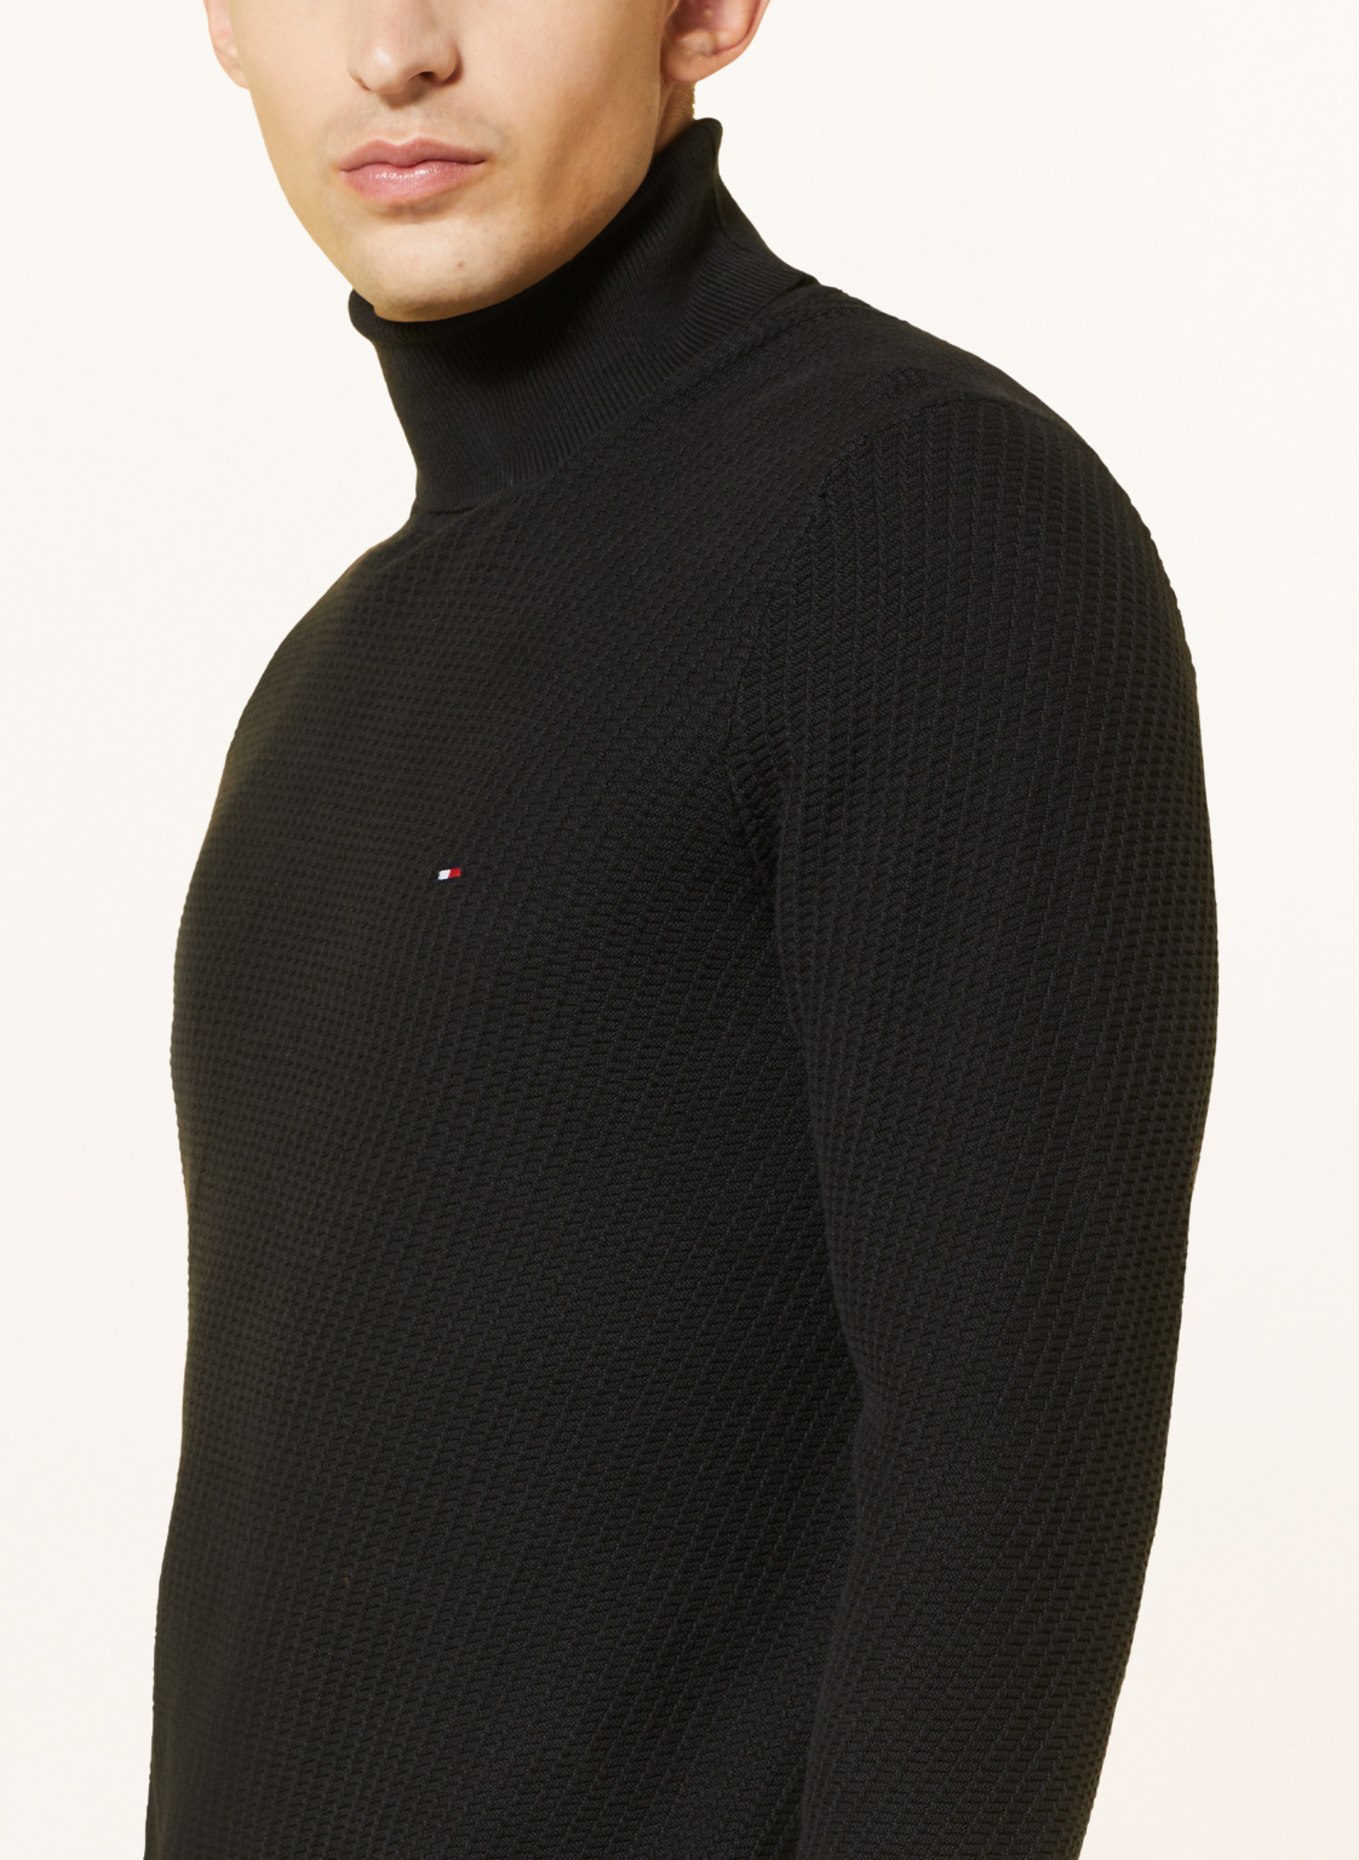 TOMMY Turtleneck sweater HILFIGER in black